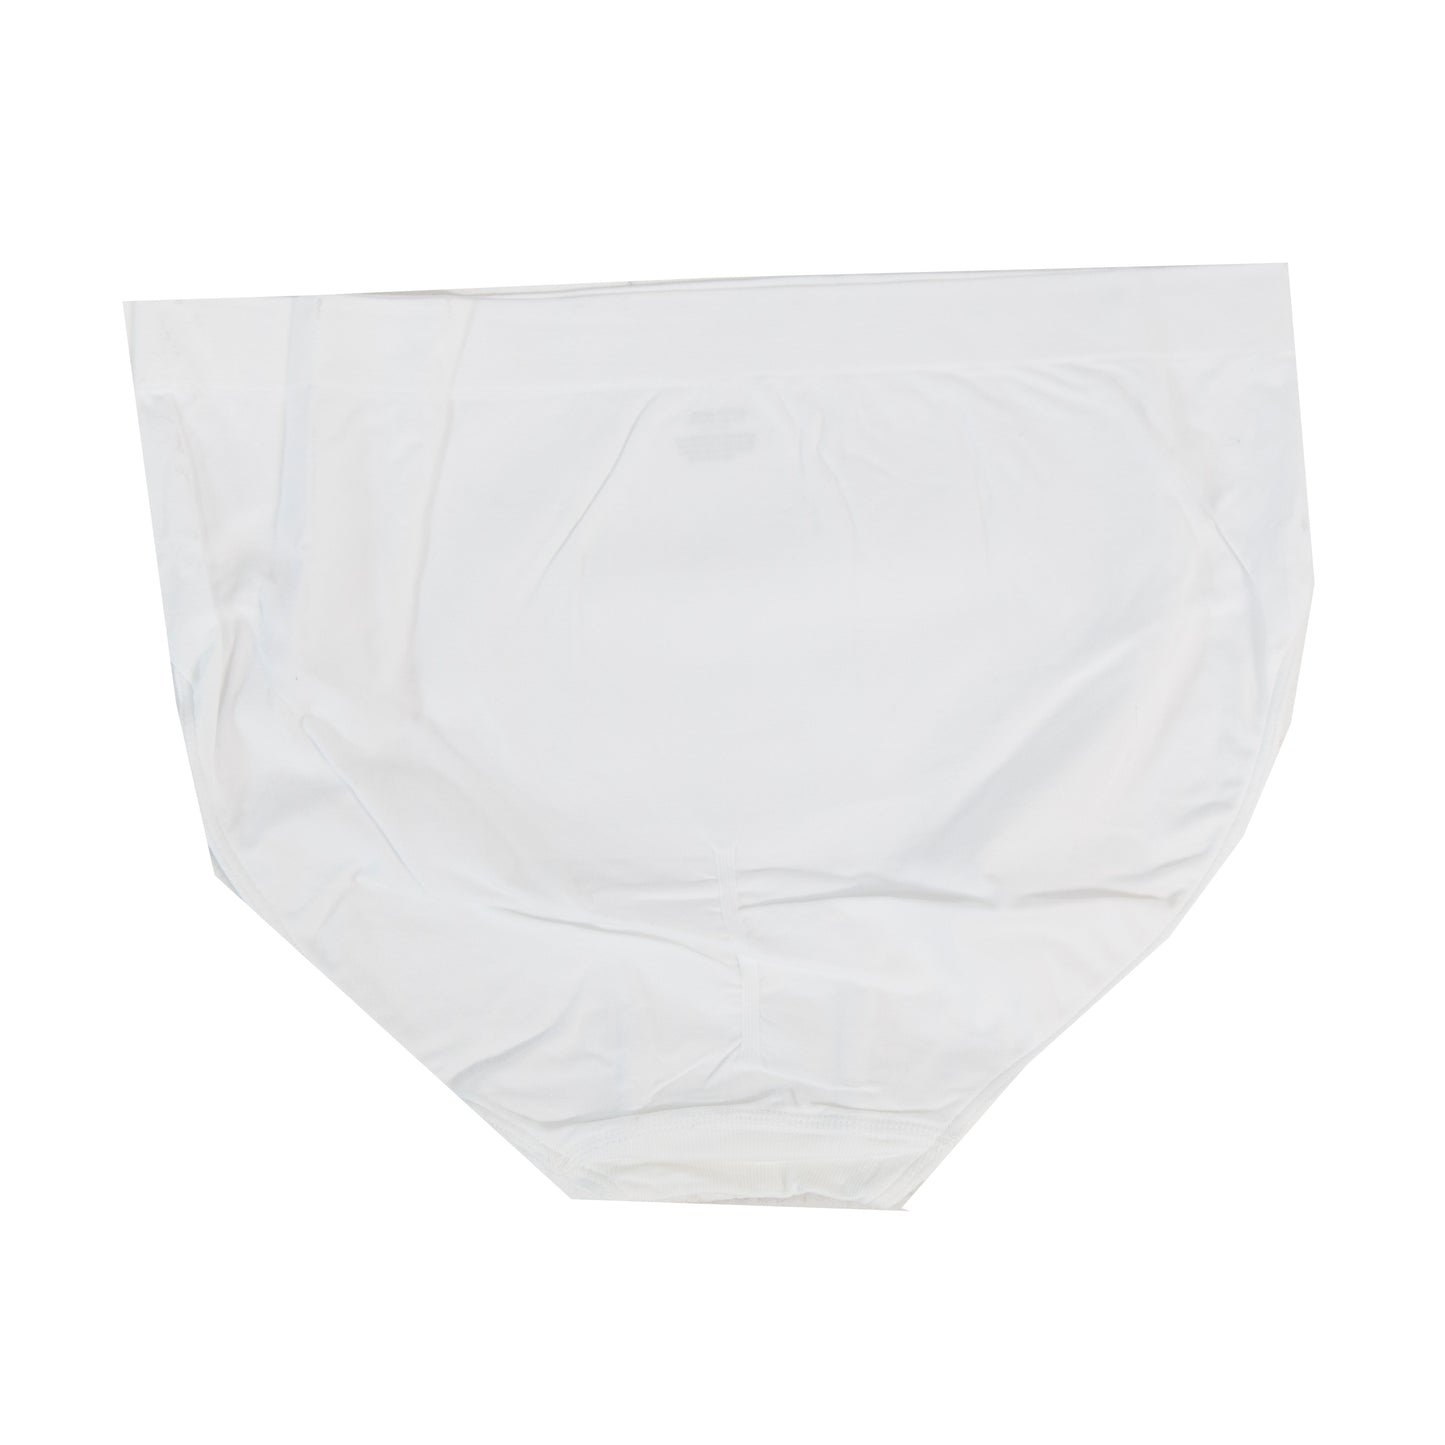 3 Pack) Genie Slim Panties 360 Slimming Panty Underwear White